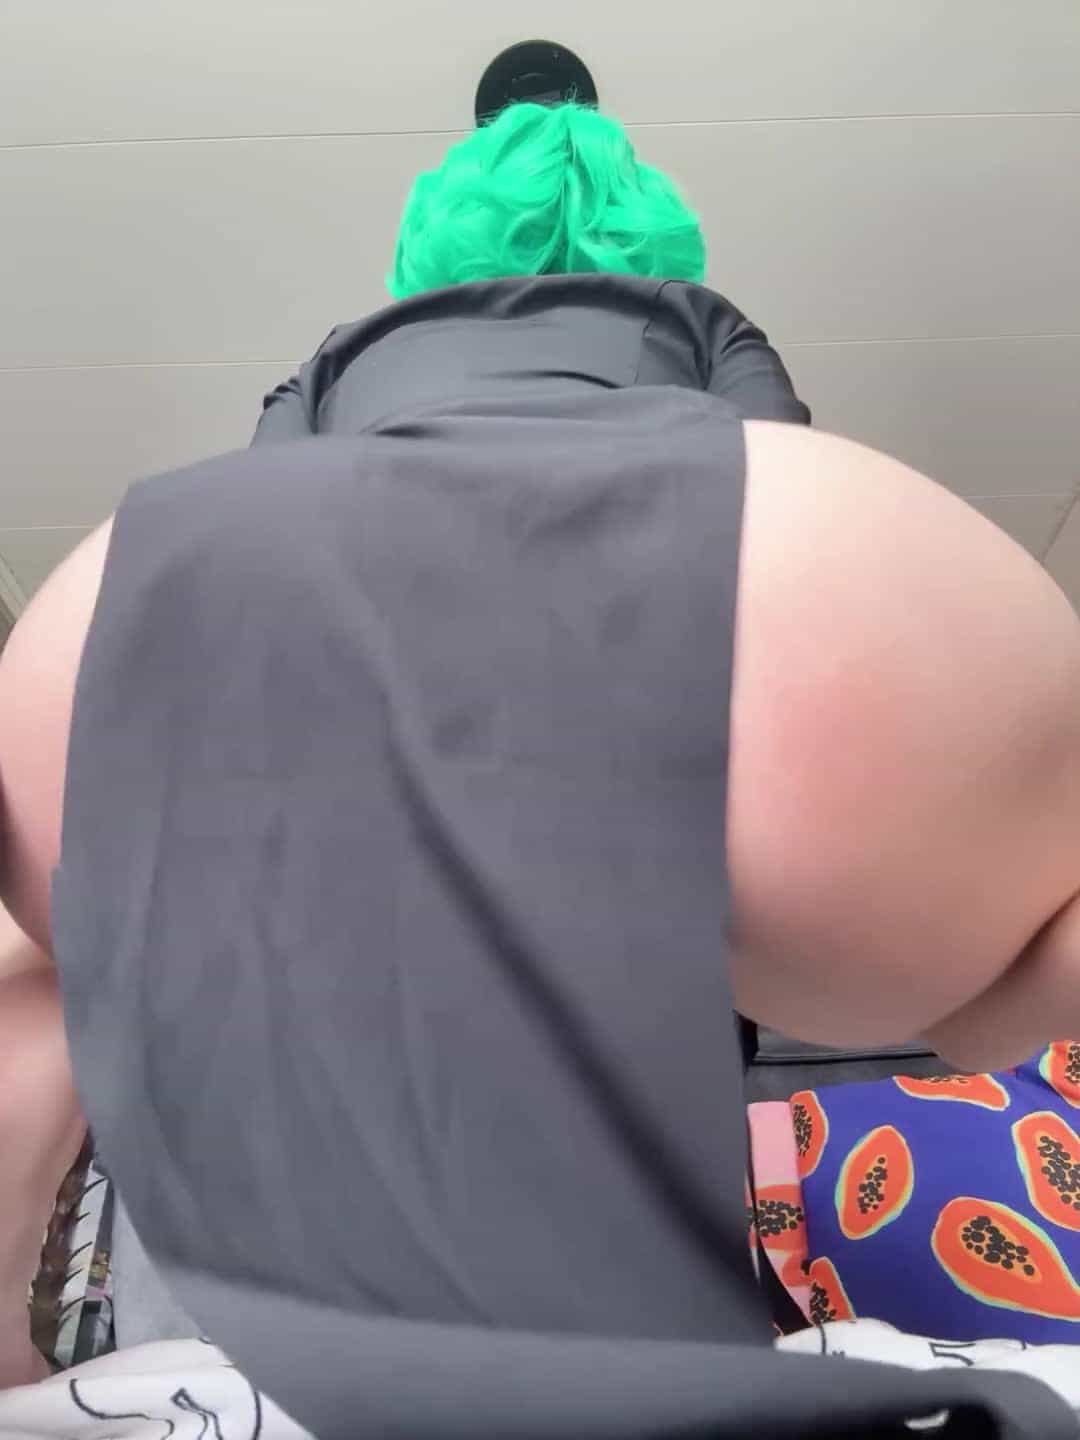 spank the neon slut's ass